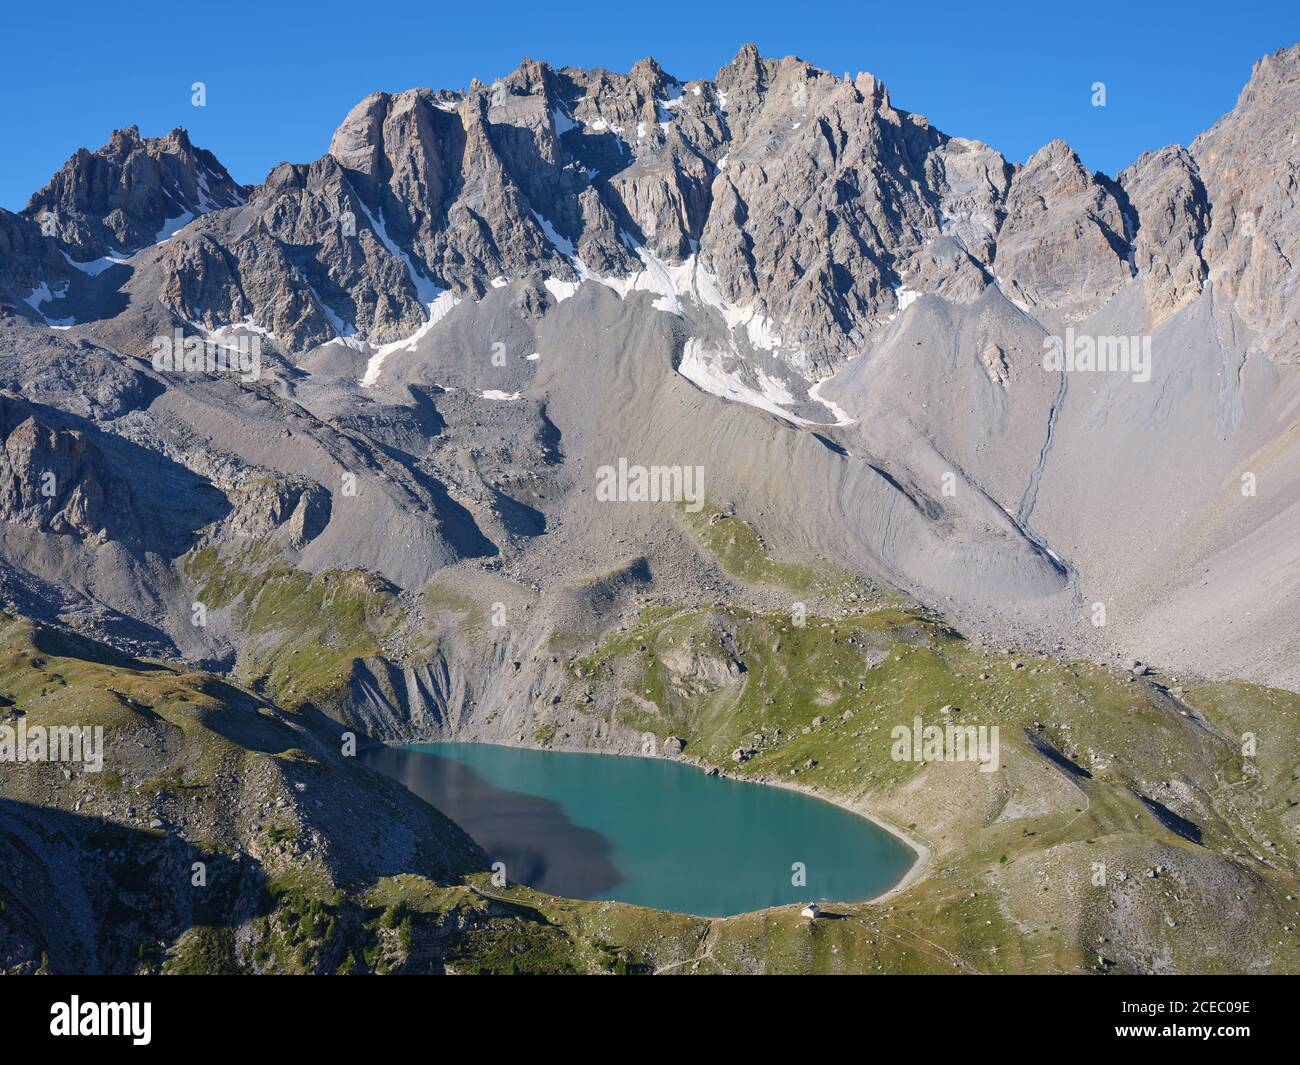 LUFTAUFNAHME. LAC Sainte-Anne, A tarn (alt: 2414 m) am Fuße des Pics de la Font Sancte (alt: 3385 m). Ceillac, Hautes-Alpes, Frankreich. Stockfoto